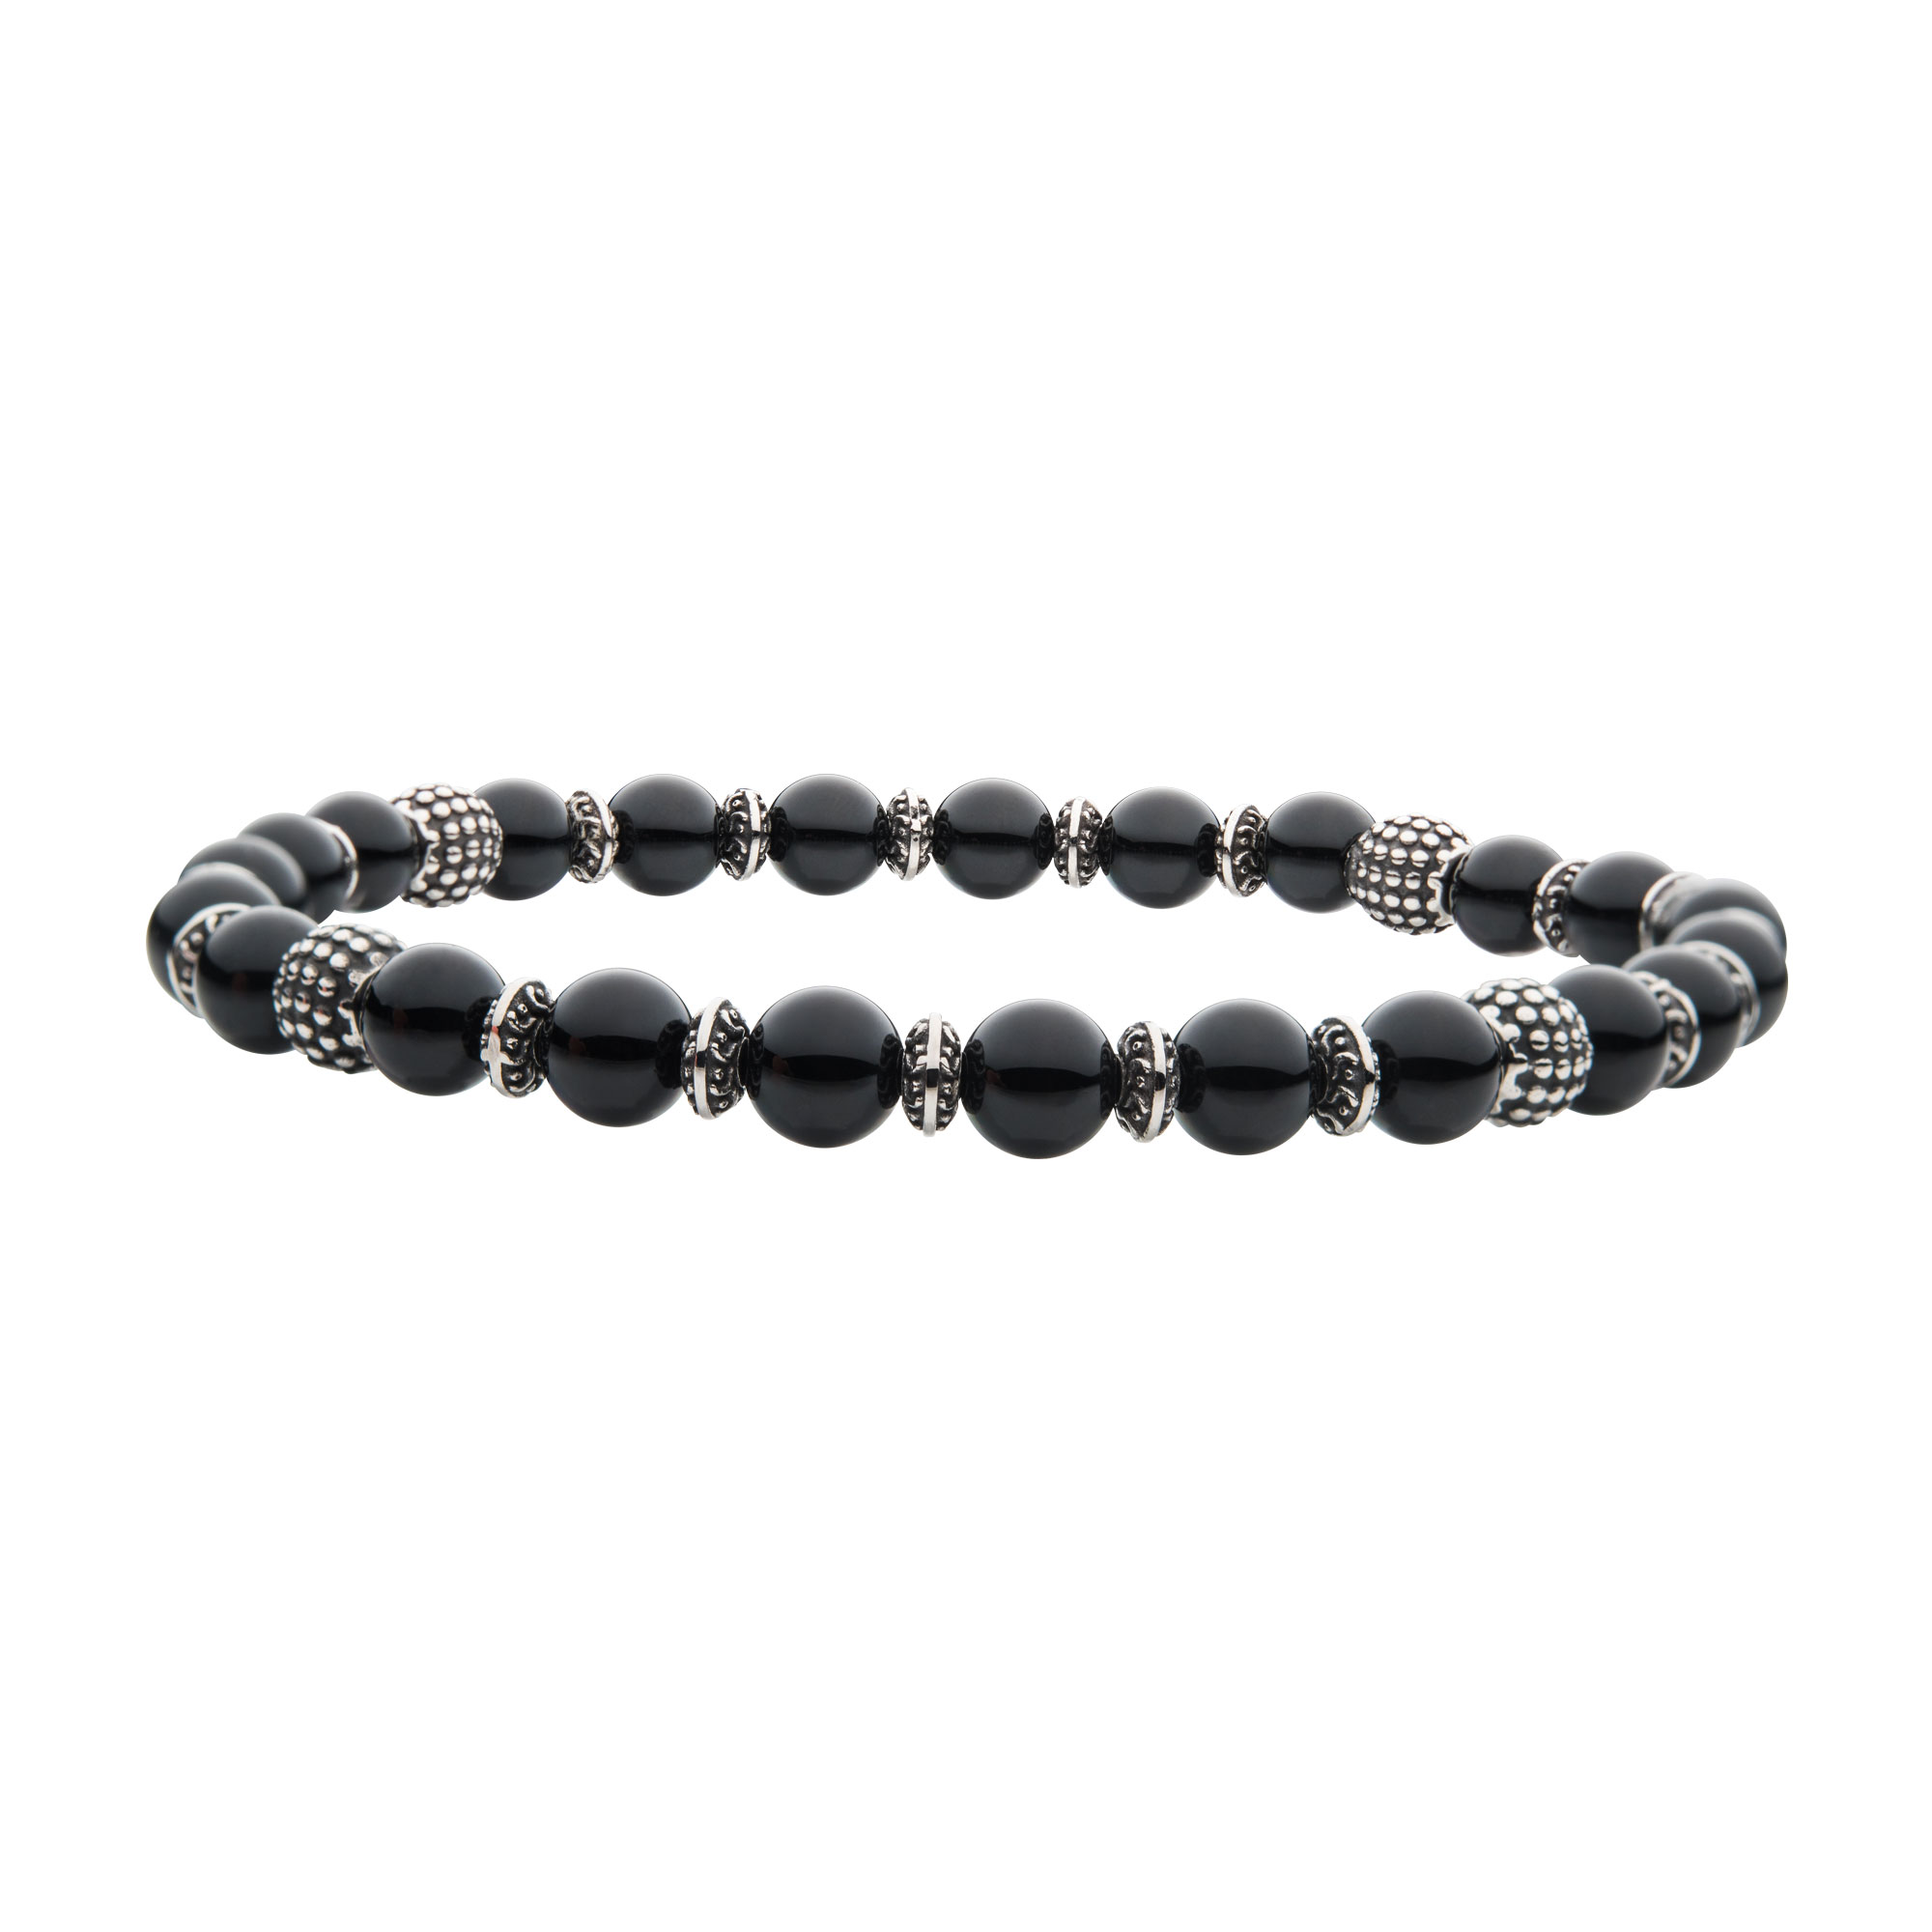 Black Agate Stones with Black Oxidized Beads Bracelet Spath Jewelers Bartow, FL